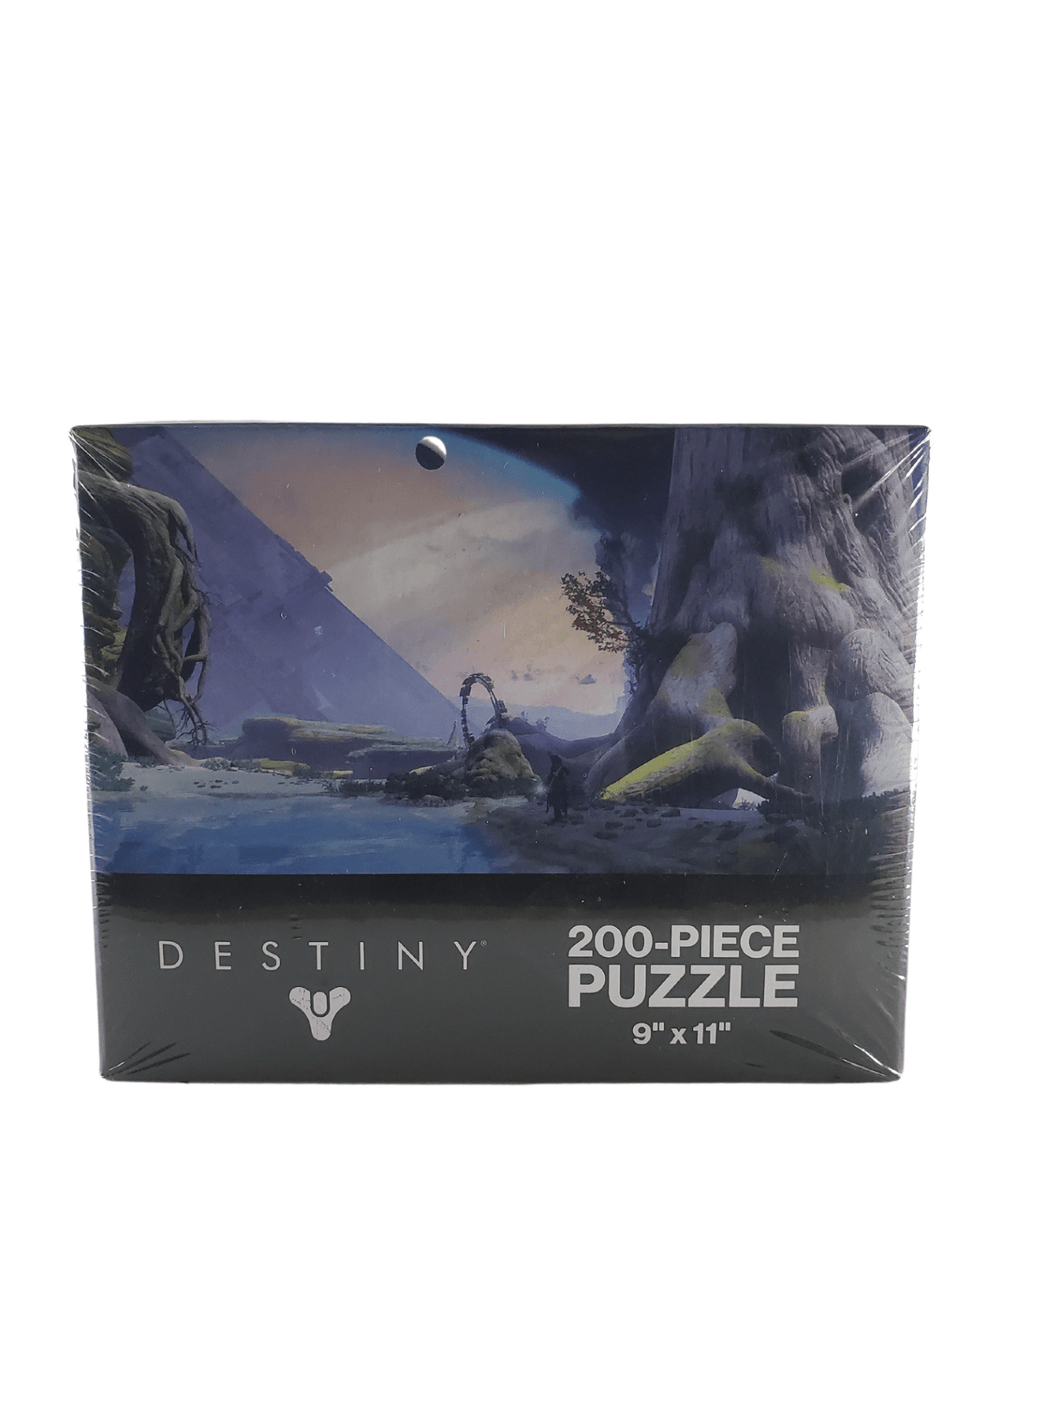  Puzzle Destiny 9x11 200 Piece Puzzle